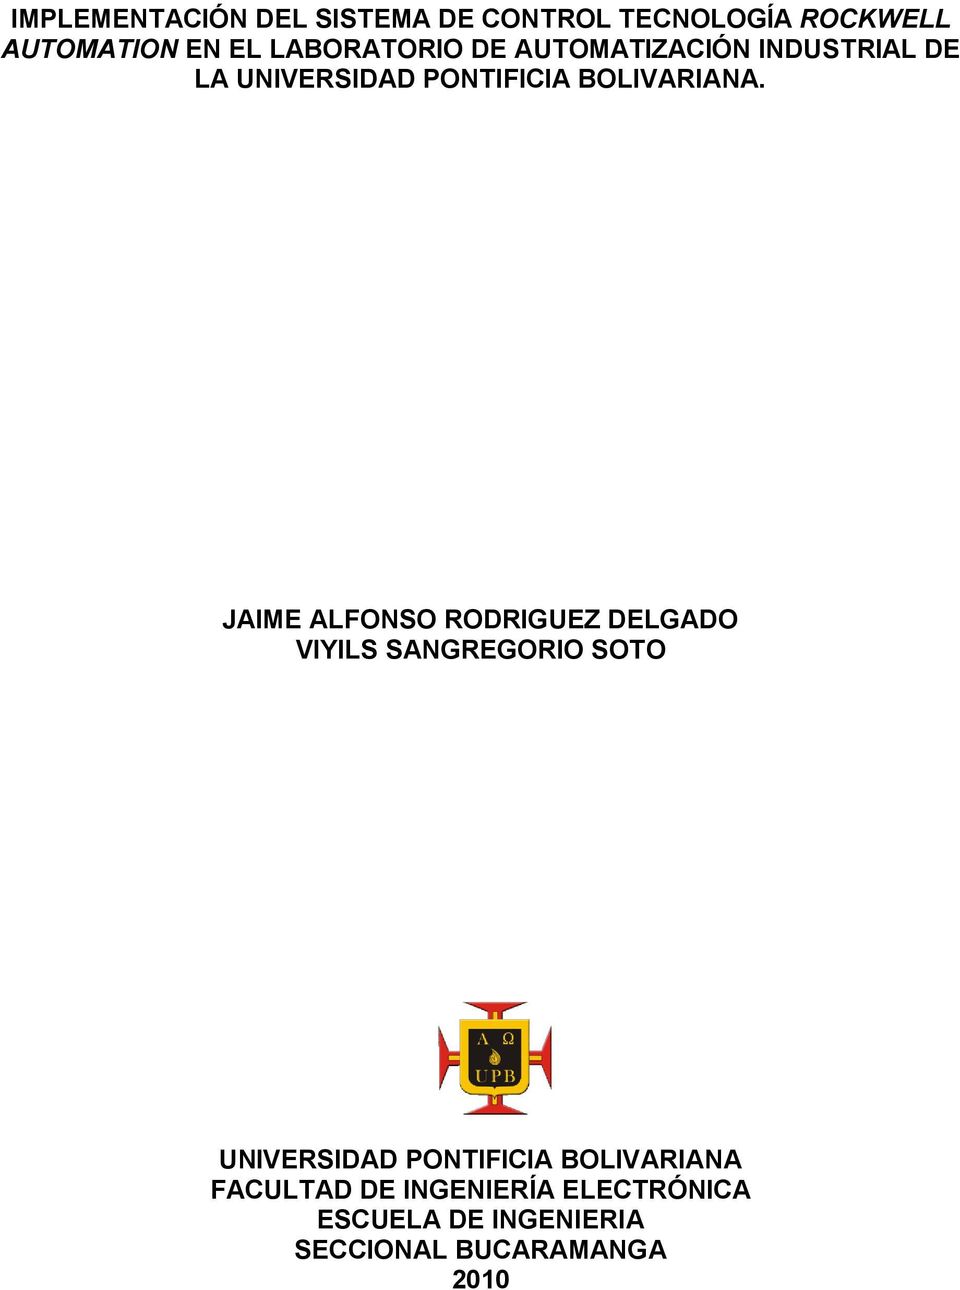 JAIME ALFONSO RODRIGUEZ DELGADO VIYILS SANGREGORIO SOTO UNIVERSIDAD PONTIFICIA